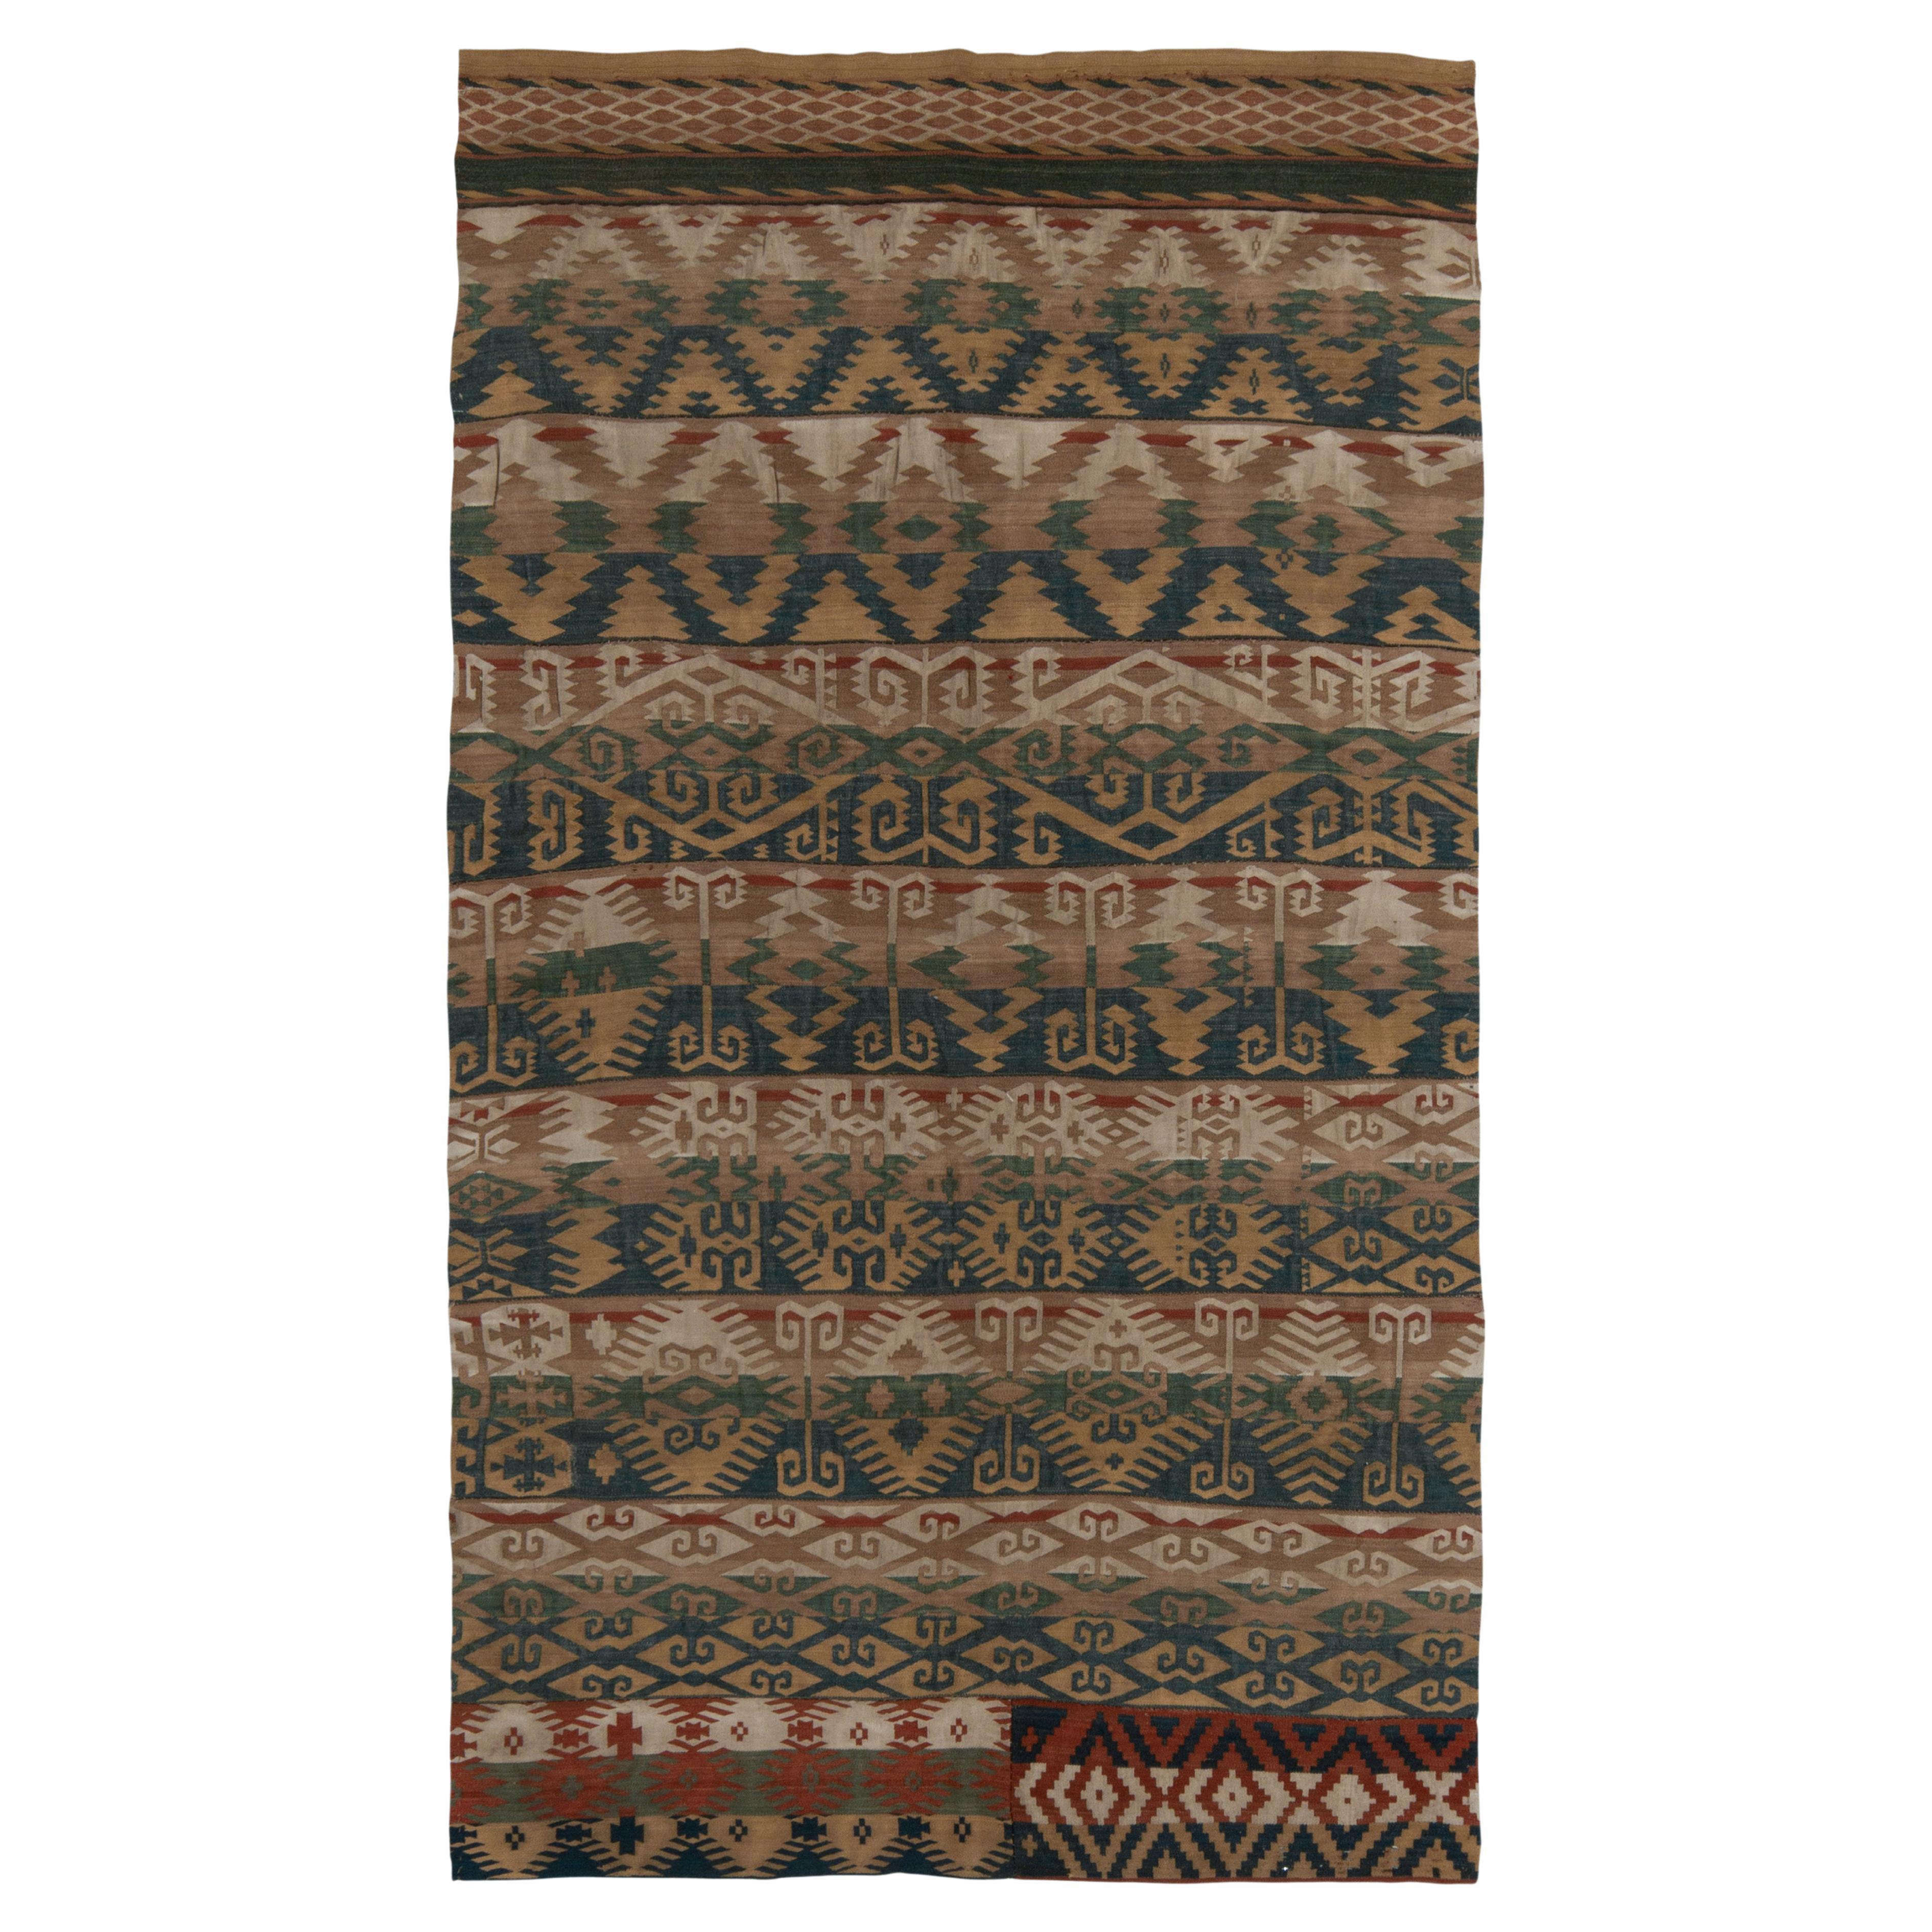 Vintage Kilim rug in Brown, Blue, Green Tribal Geometric Pattern by Rug & Kilim